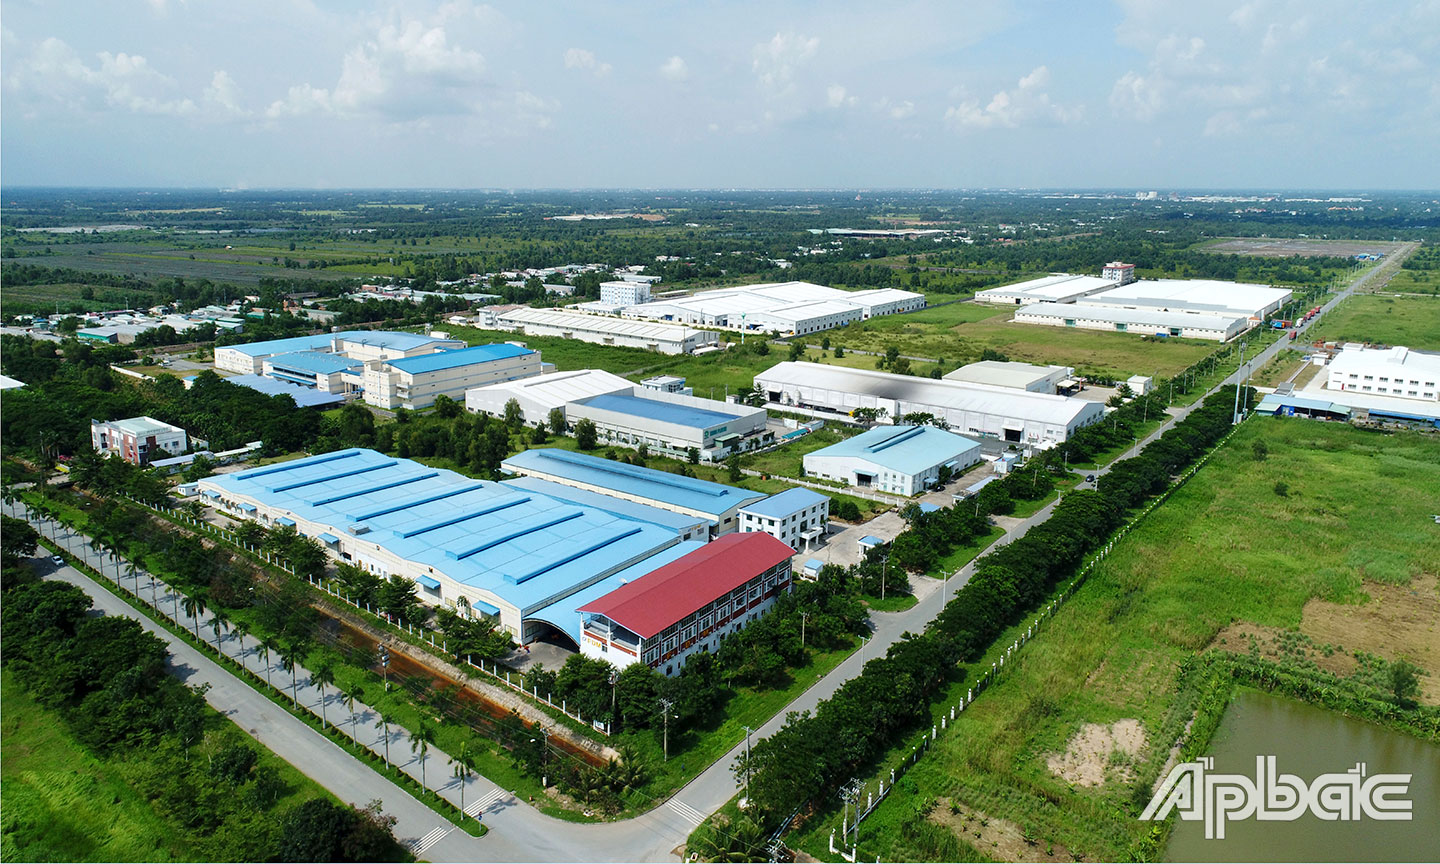 Khu vực huyện Tân Phước đang có nhiều dư địa, tiềm năng lớn cho phát triển công nghiệp. (Trong ảnh: Khu công nghiệp Long Giang). 					                     Ảnh: Lập Đức